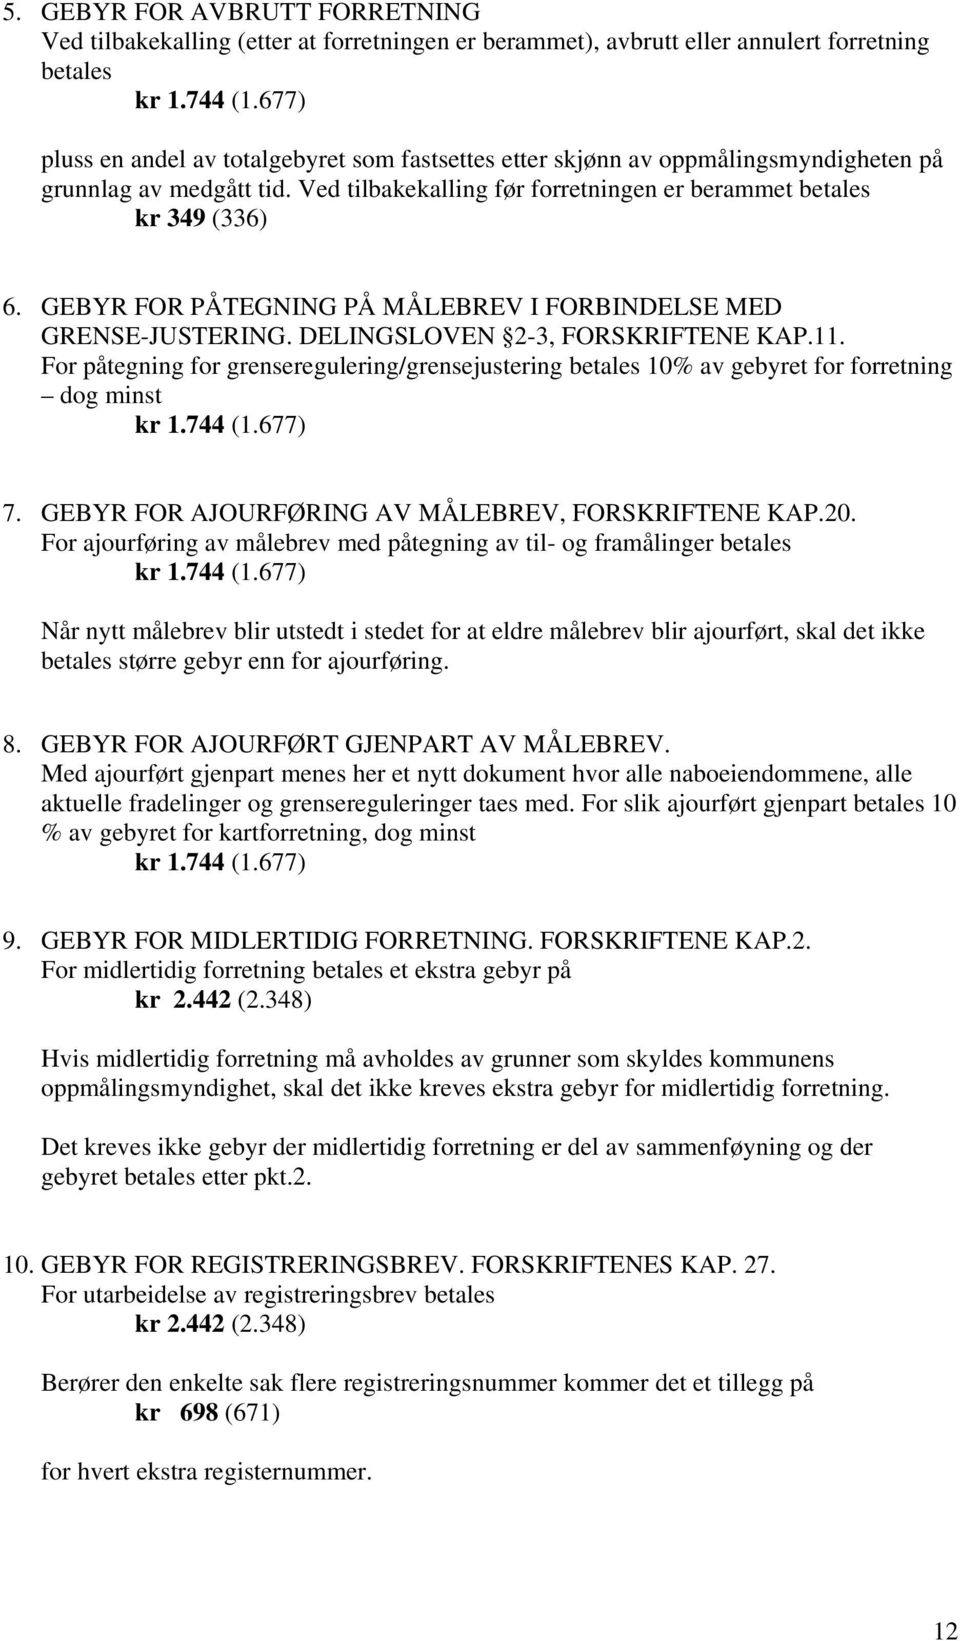 GEBYR FOR PÅTEGNING PÅ MÅLEBREV I FORBINDELSE MED GRENSE-JUSTERING. DELINGSLOVEN 2-3, FORSKRIFTENE KAP.11.